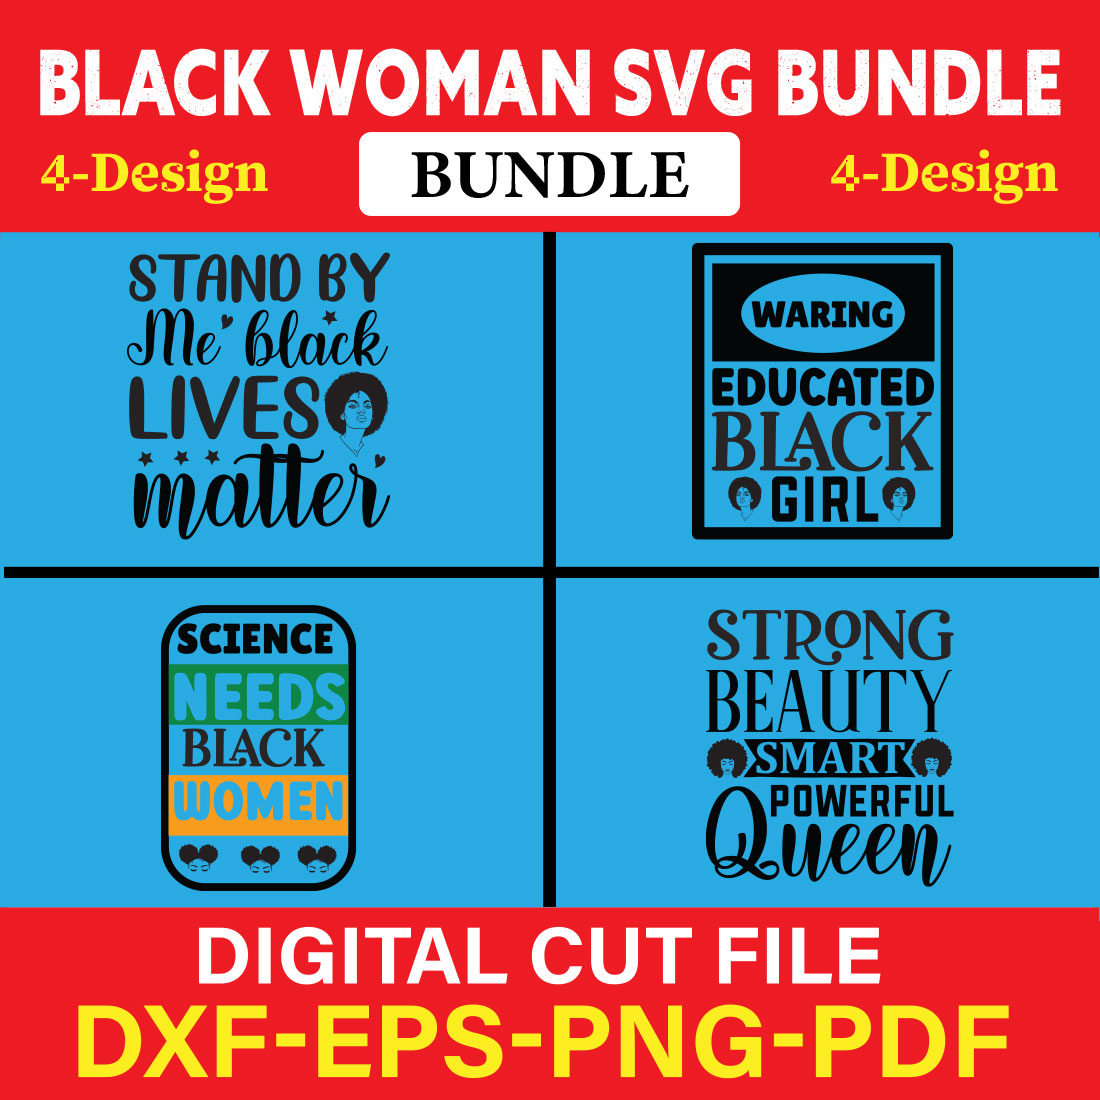 Black Woman T-shirt Design Bundle Vol-15 cover image.